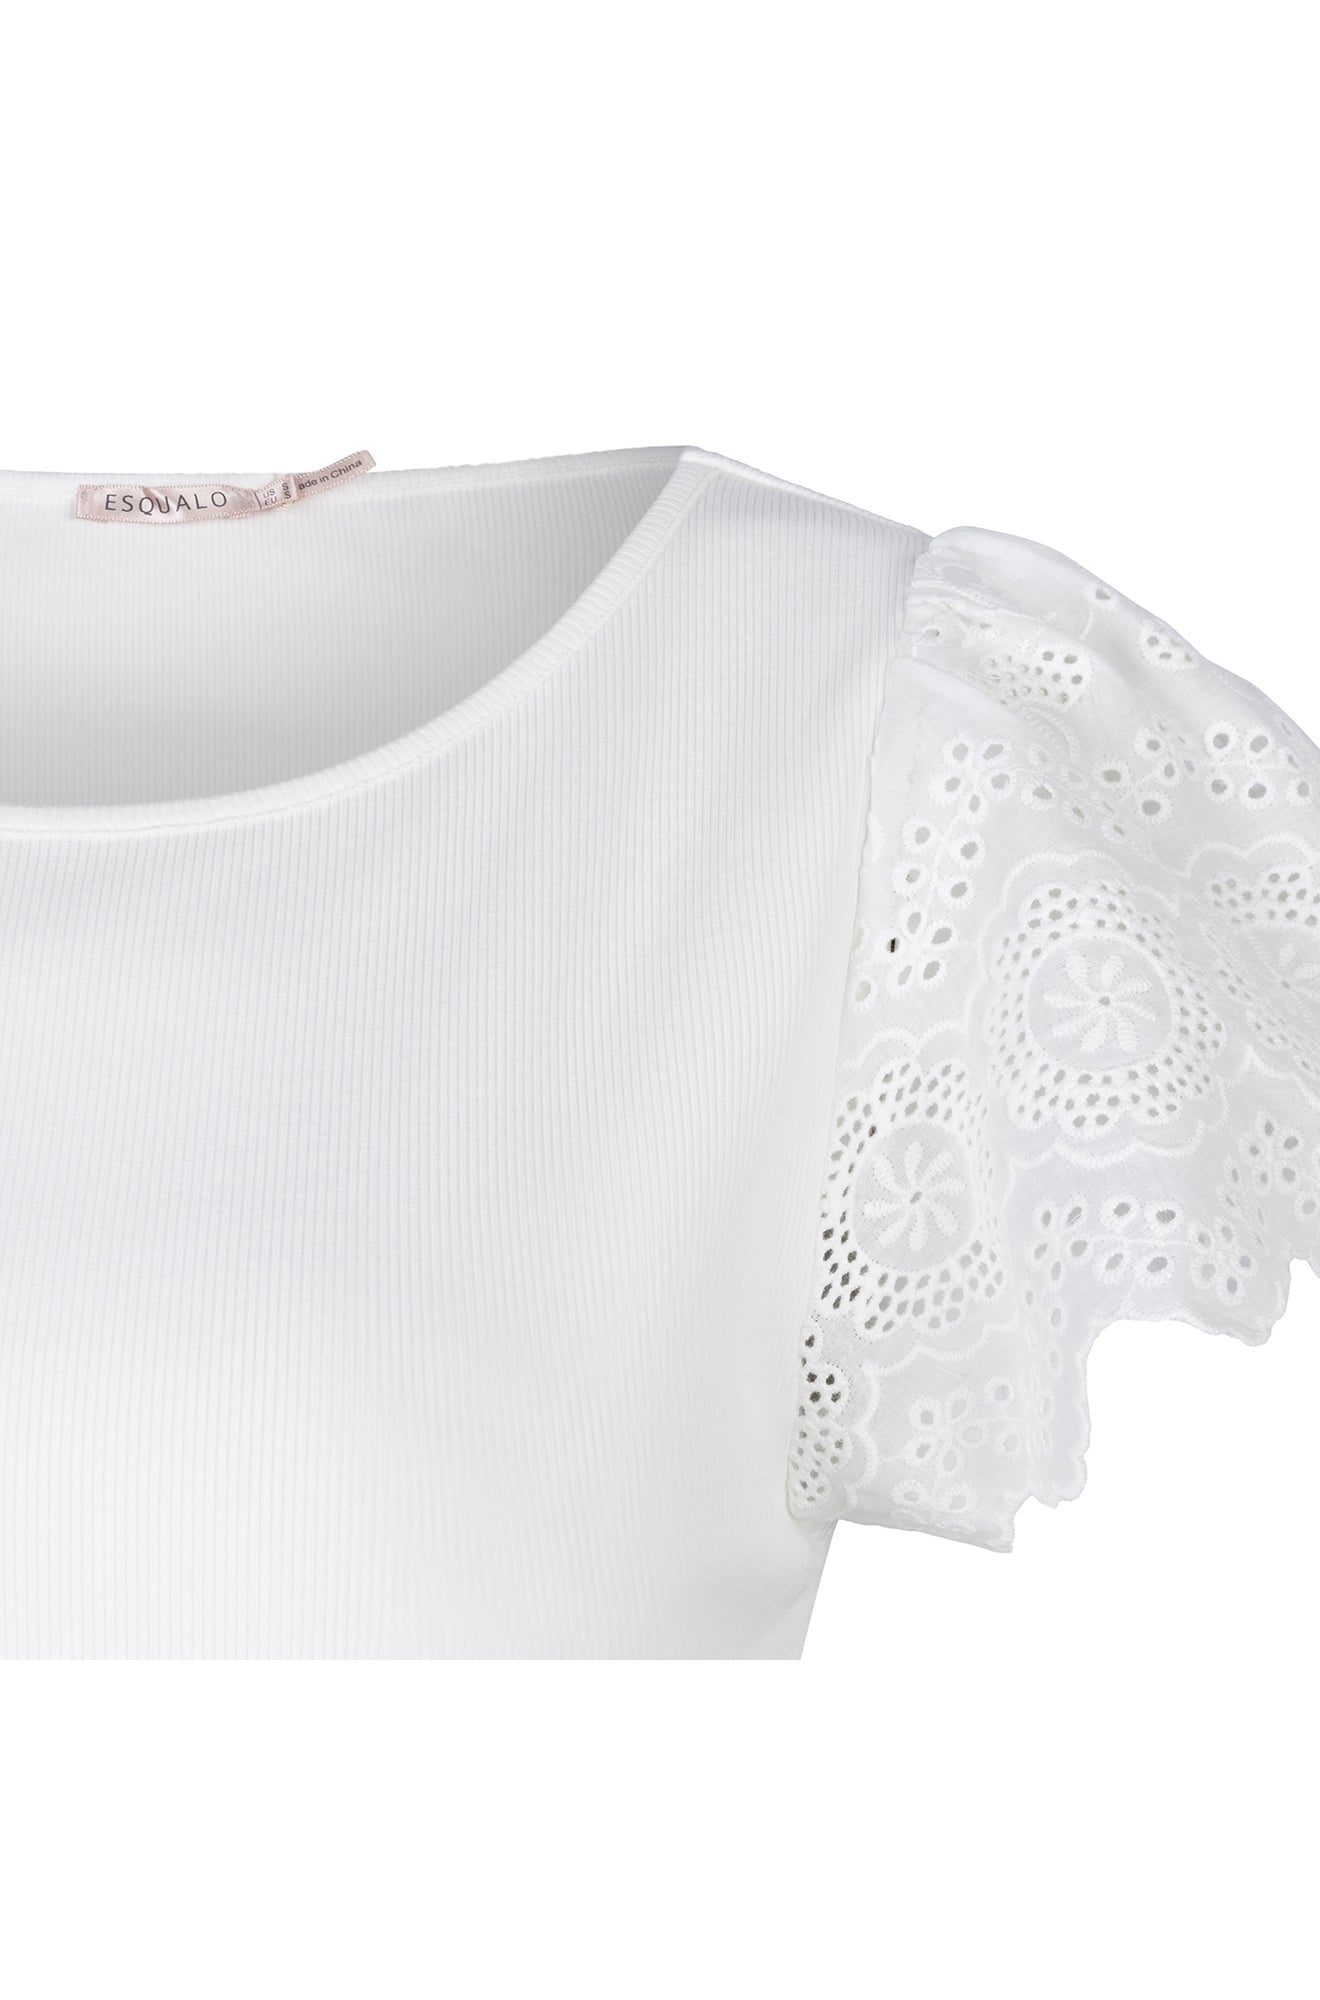 T-Shirt pour femme par Esqualo | HS2405200 Blanc/120-OFFWHITE | Boutique Vvög, vêtements mode pour homme et femme